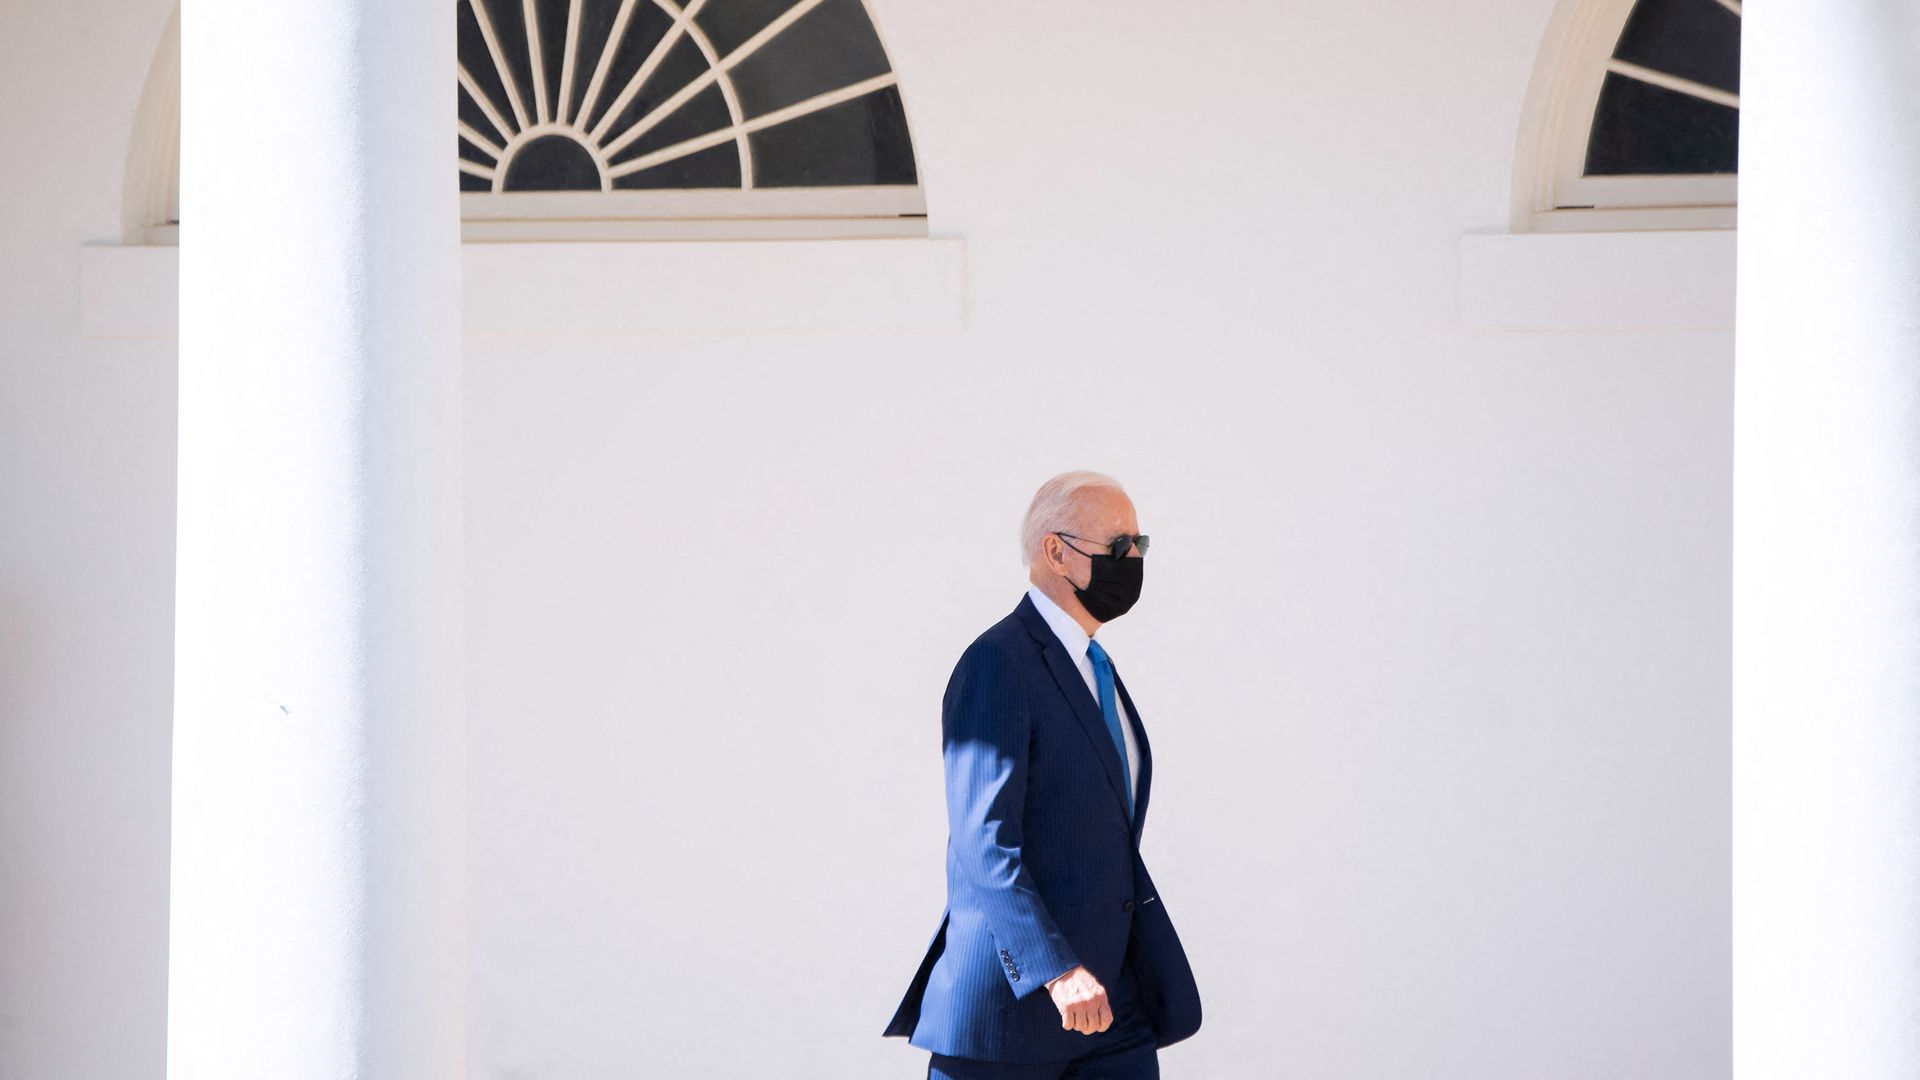 President Joe Biden walks alongside the West Wing Colonnade